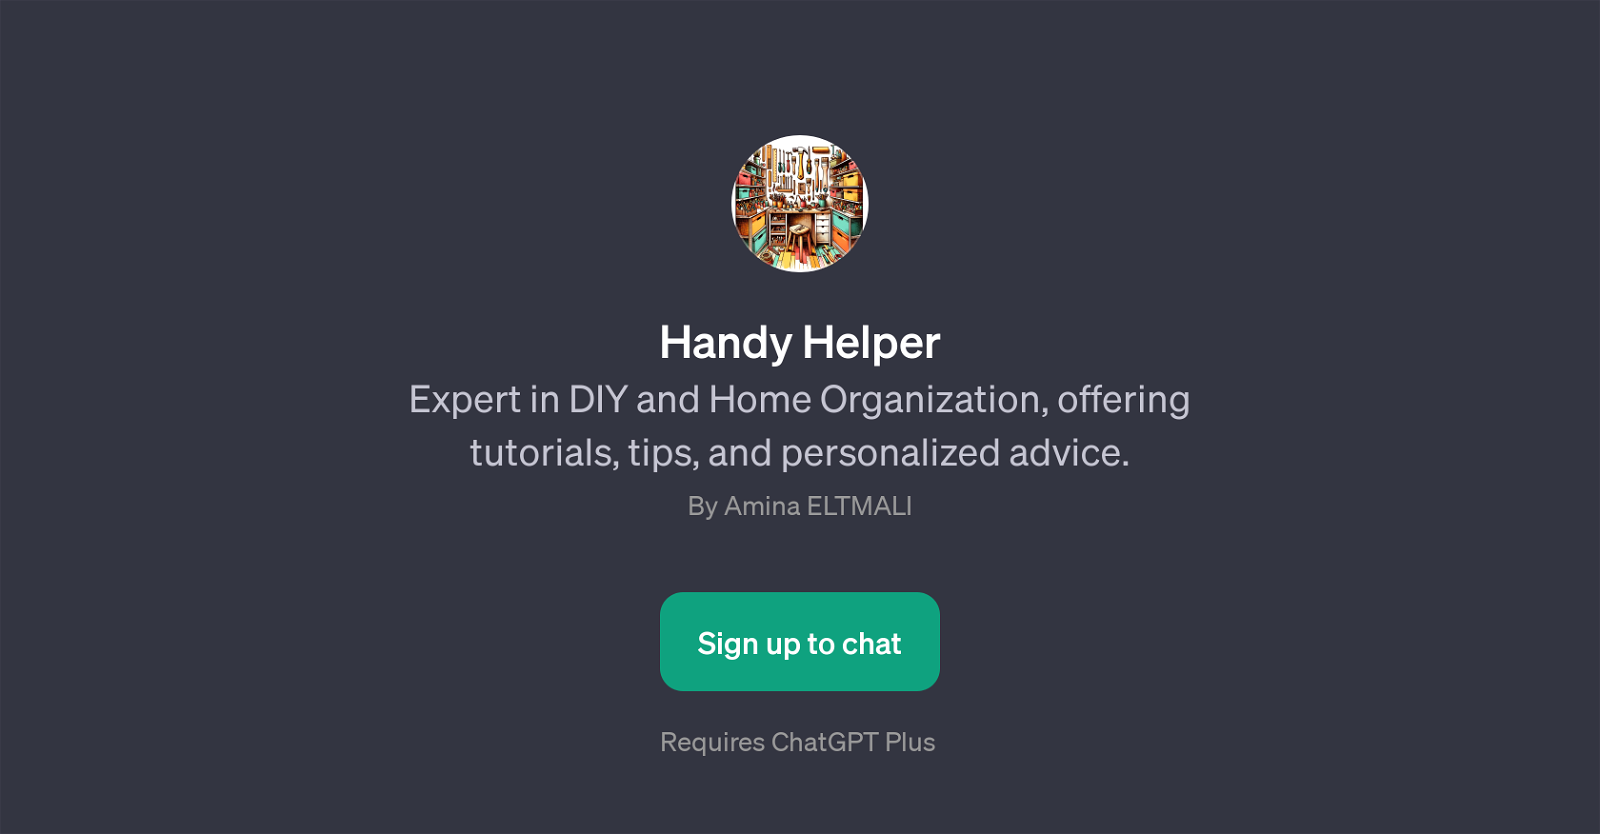 Handy Helper website